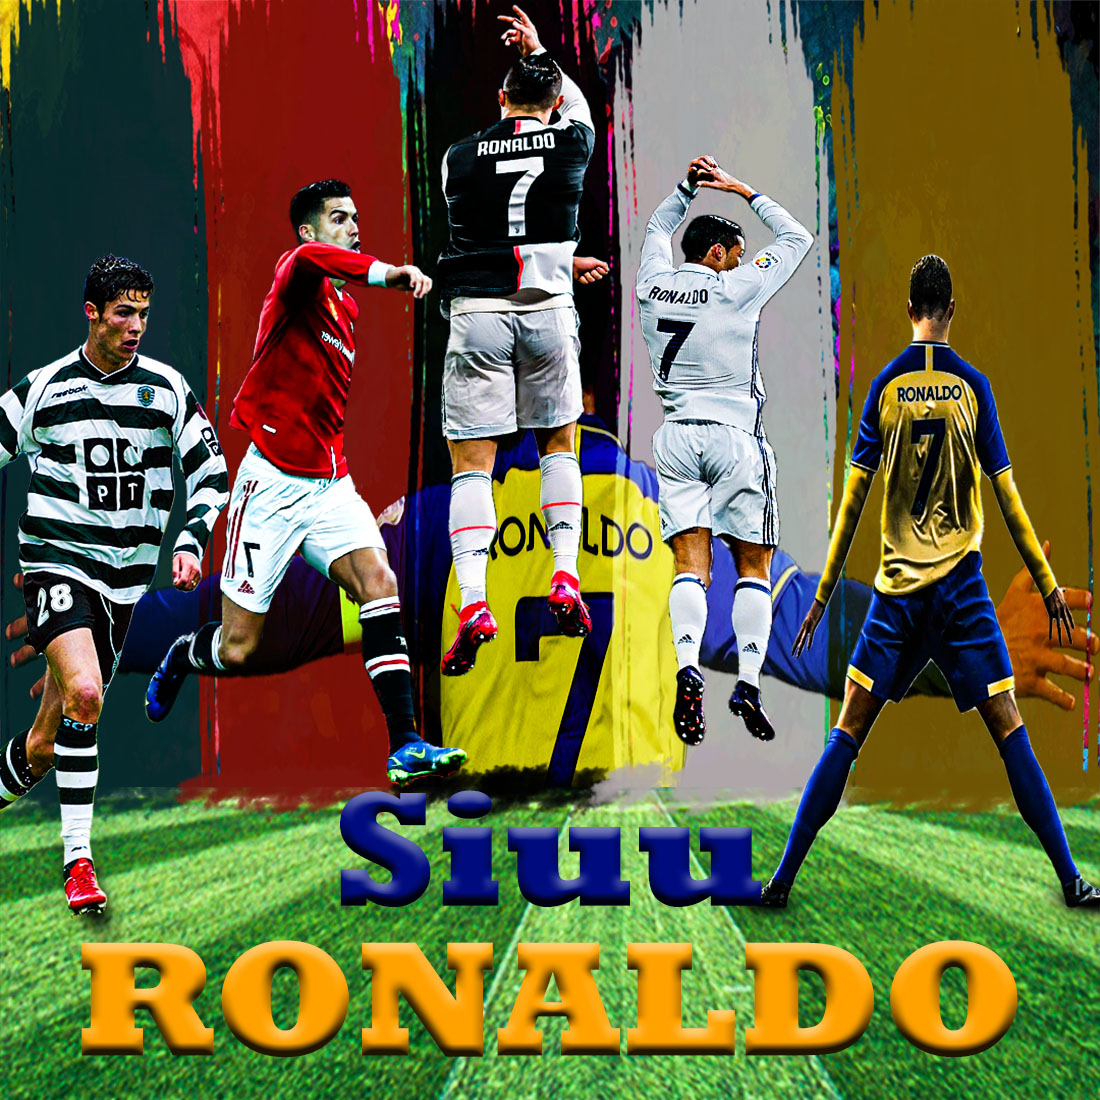 Christiano Ronaldo Siuu preview image.